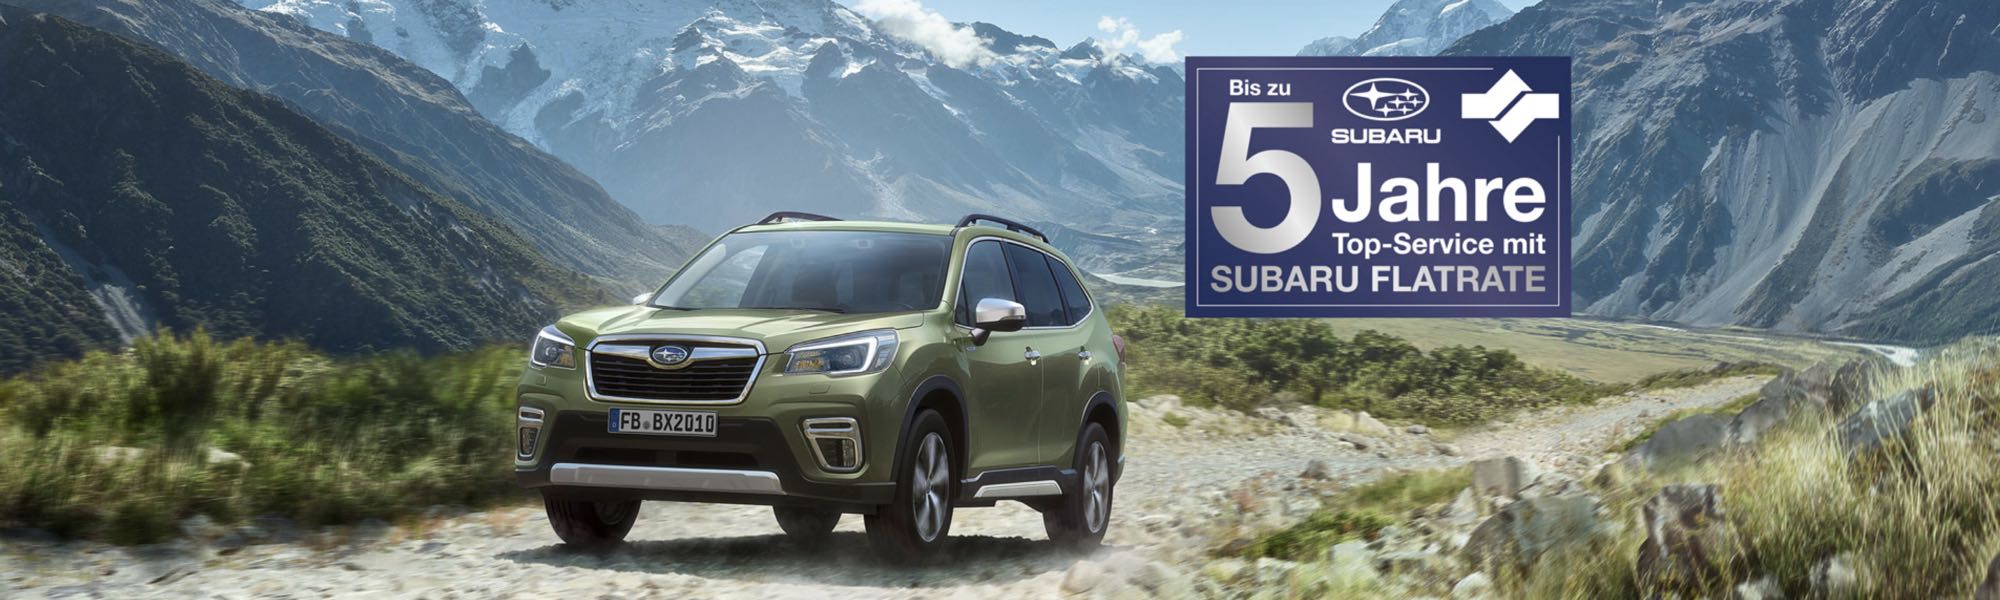 Subaru Service-Flatrate - Die beste Vorsorge für Ihren neuen Subaru